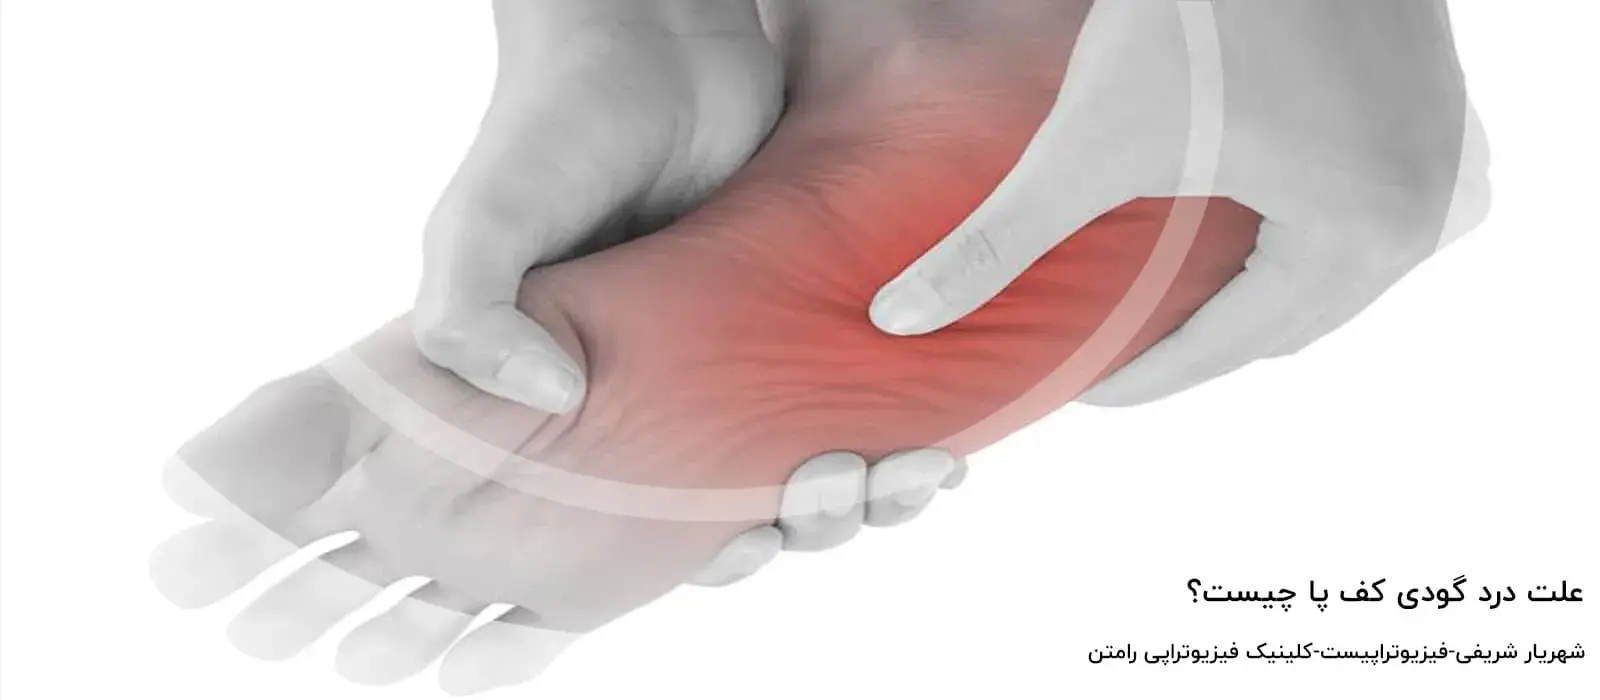 علت درد گودی کف پا چیست؟